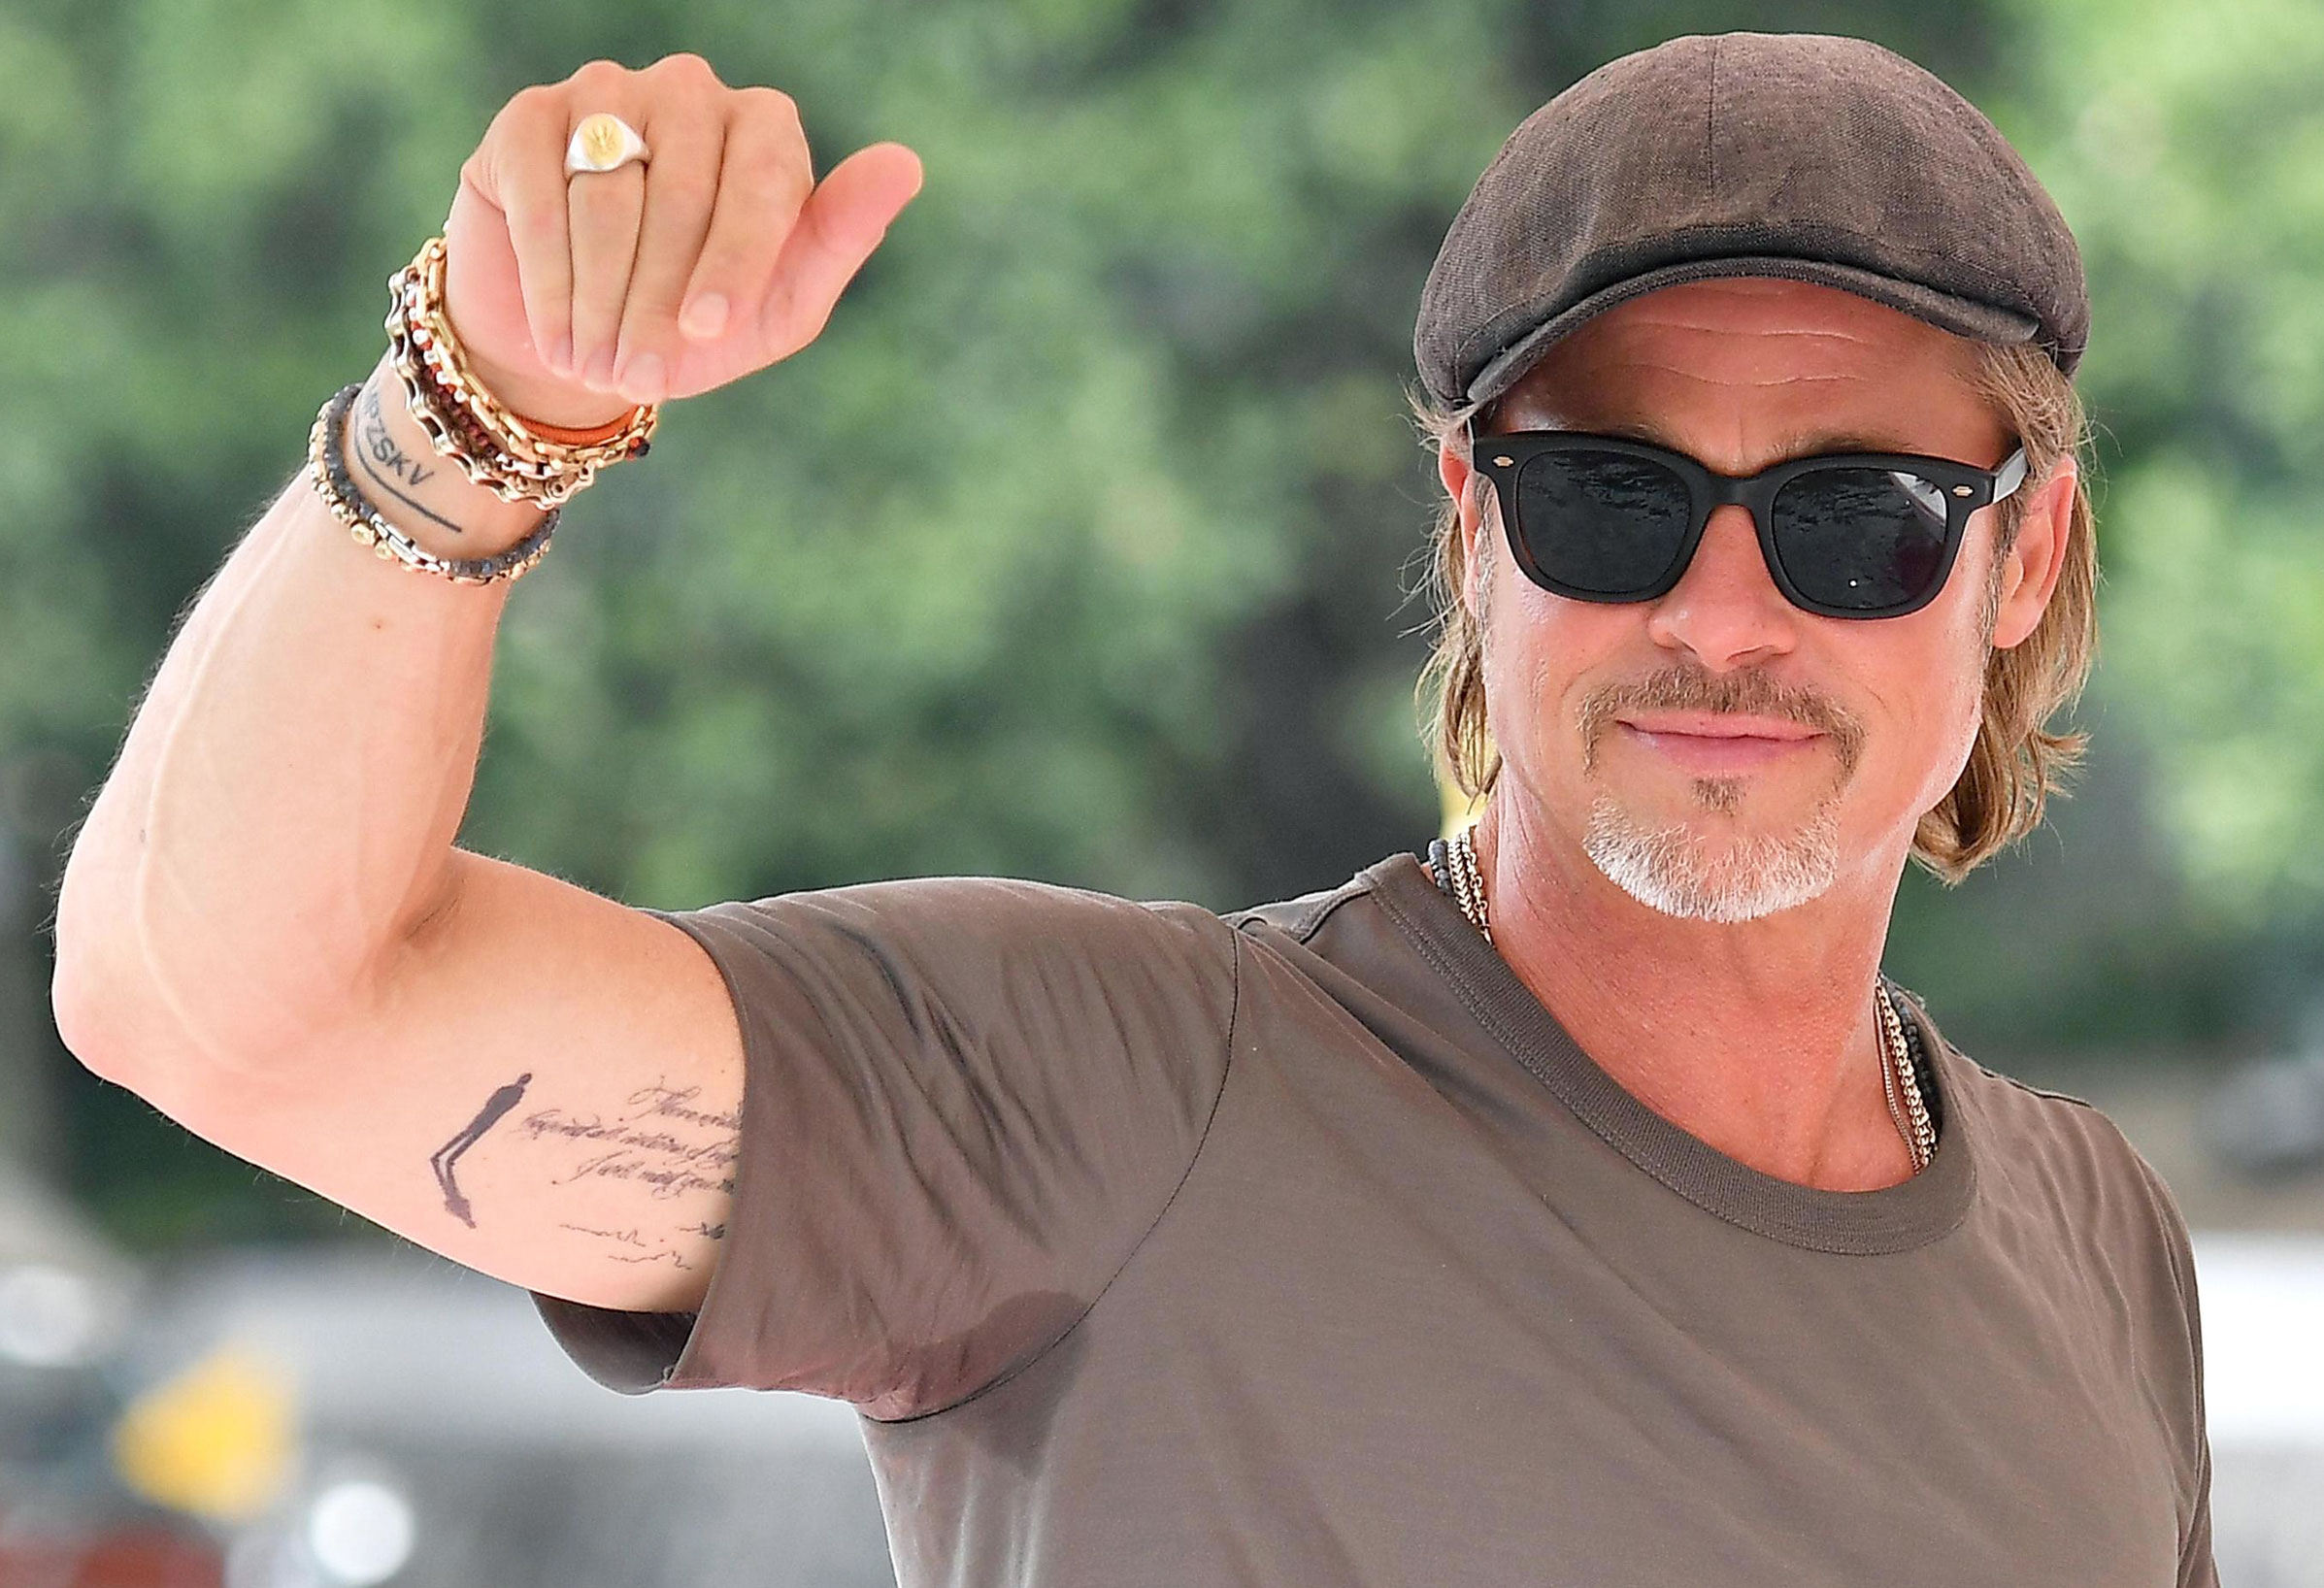 brad pitt tattoos | Tattoos on Brad Pitt the actor married t… | Flickr